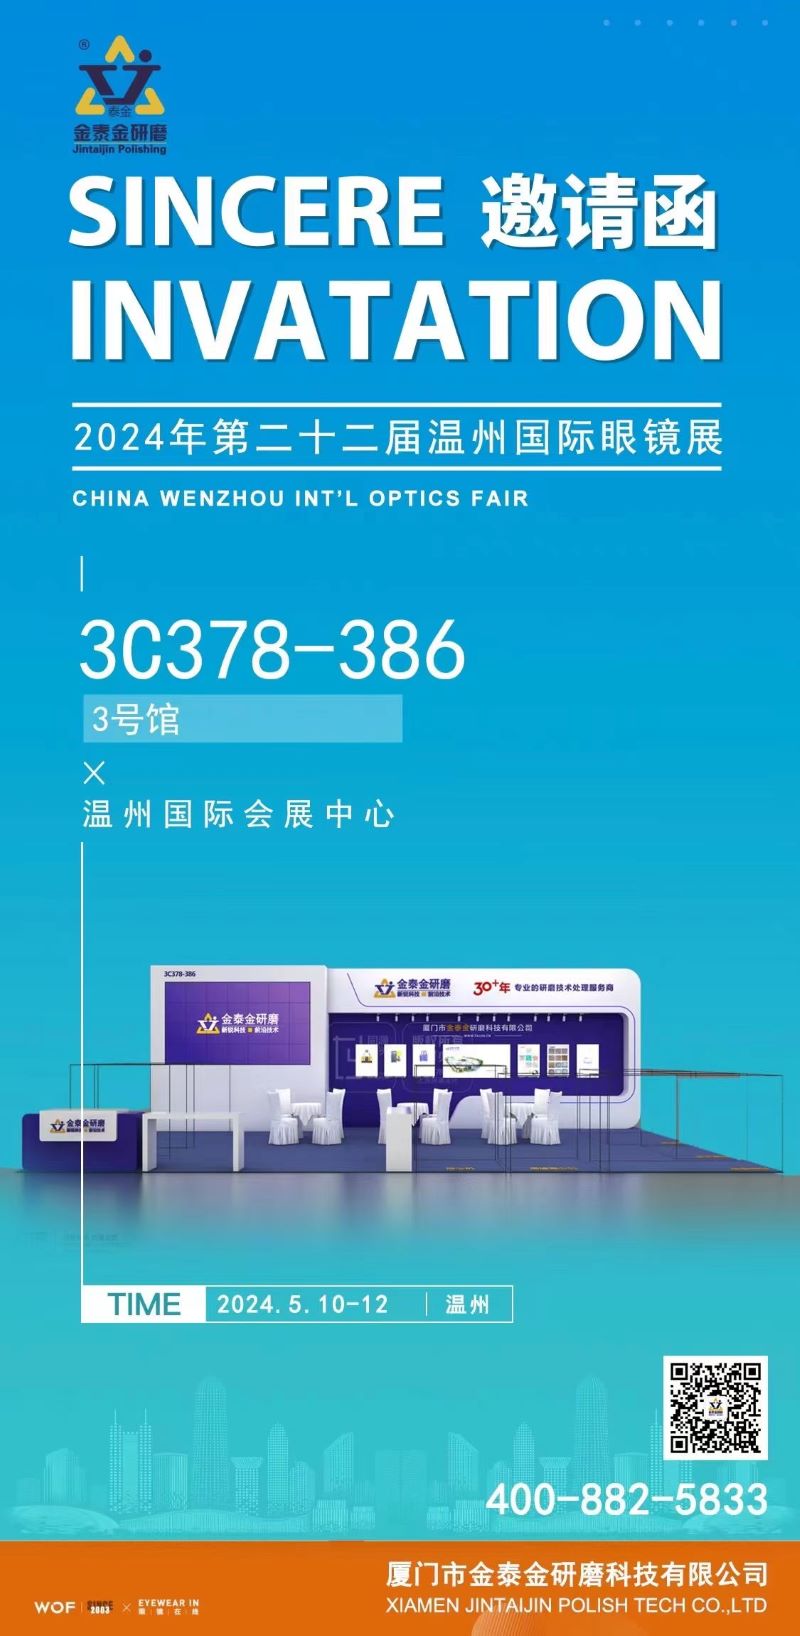 Jintaijin Polishing Technology Co. annonce sa participation au salon international de l'optique de Wenzhou 2024